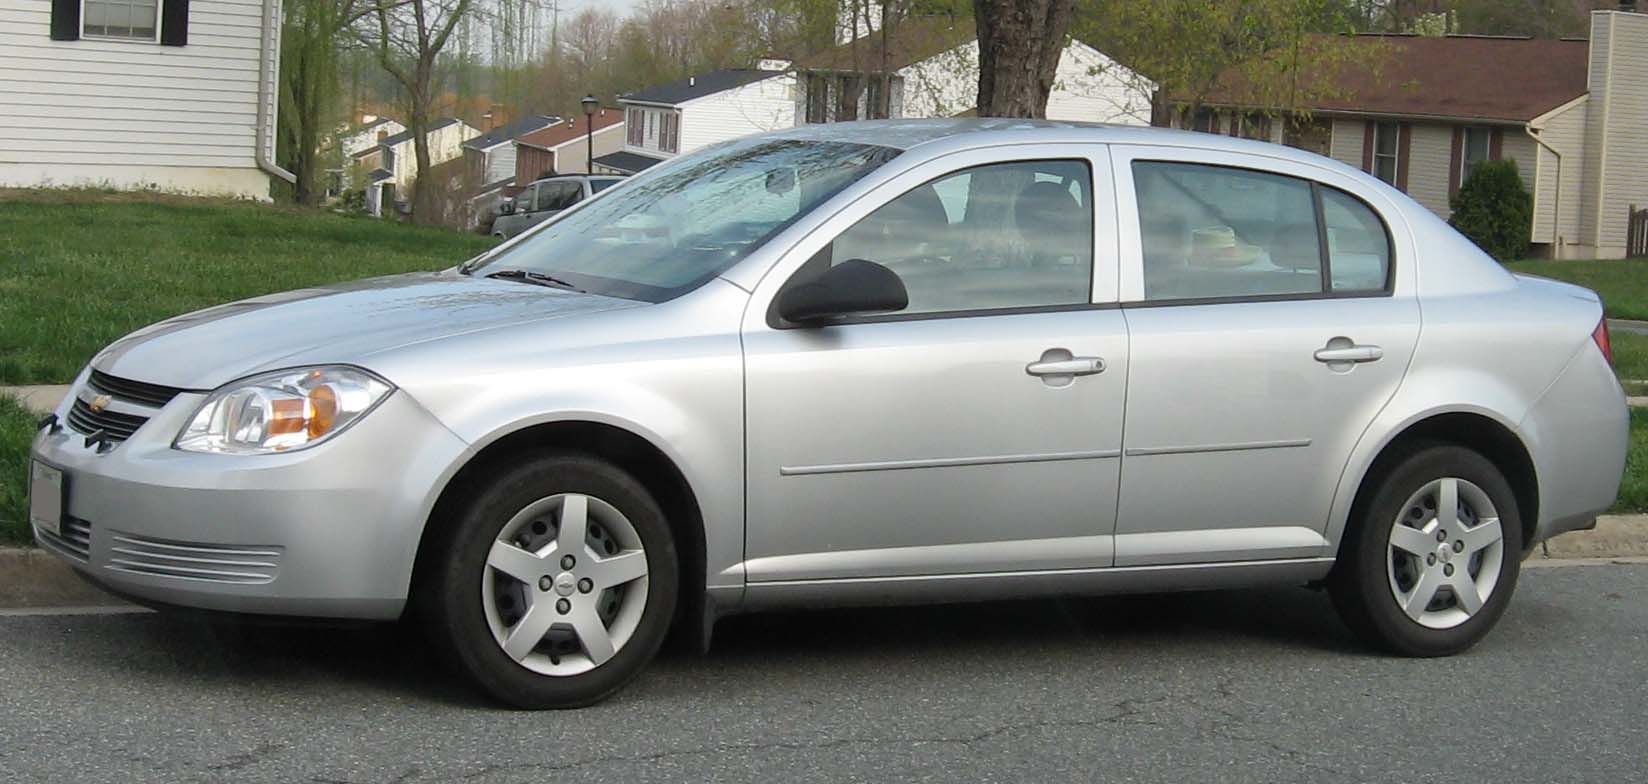 File:Chevrolet-Cobalt-Sedan.jpg - Wikipedia